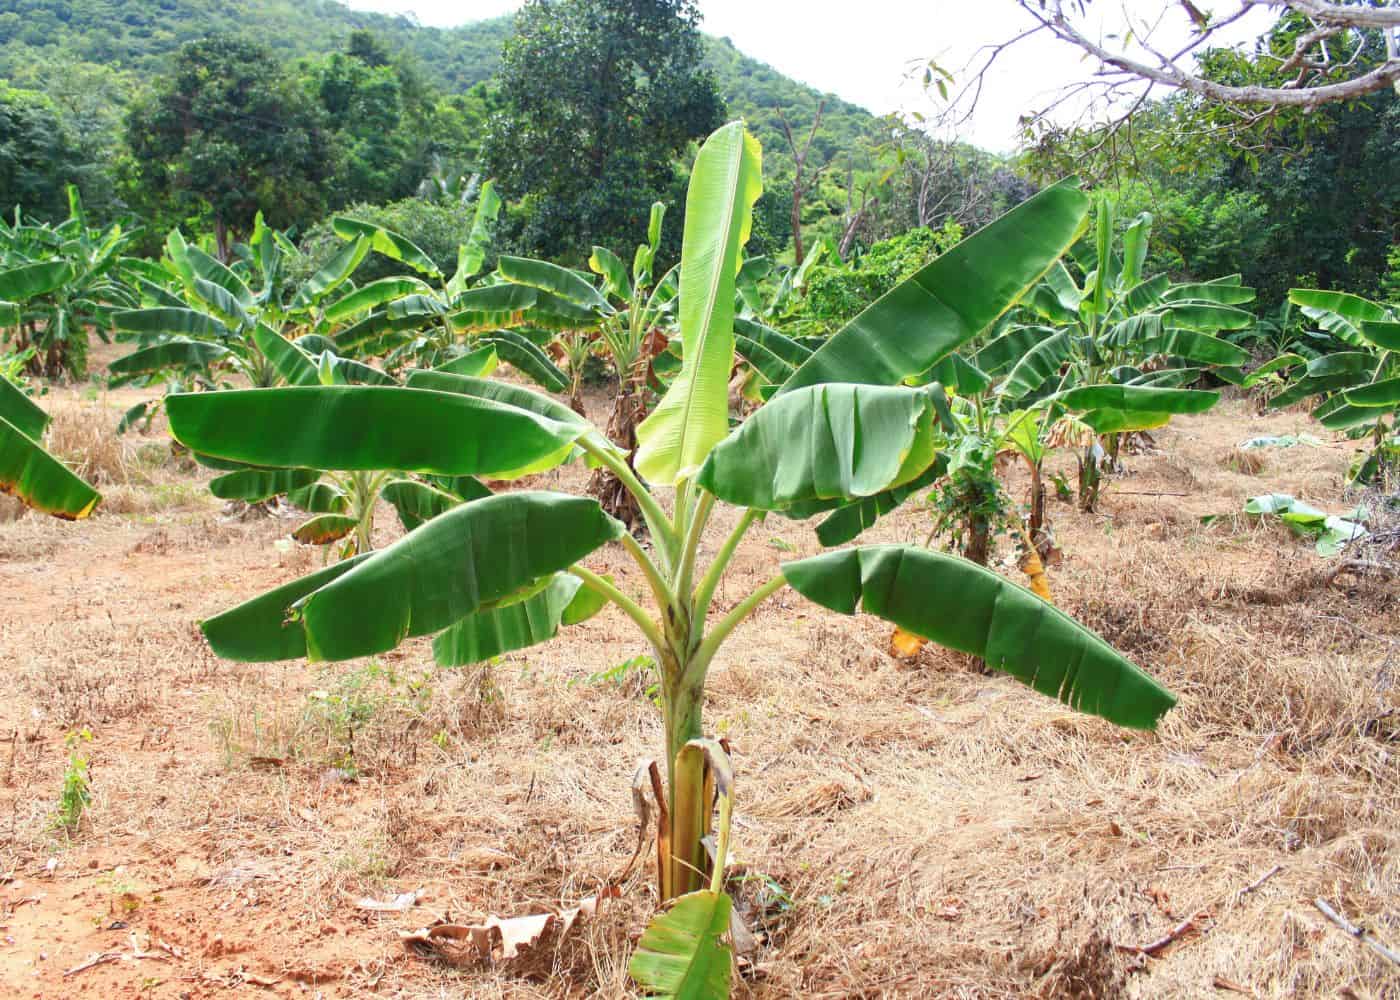 Banana tree in field - how to propagate banana trees!